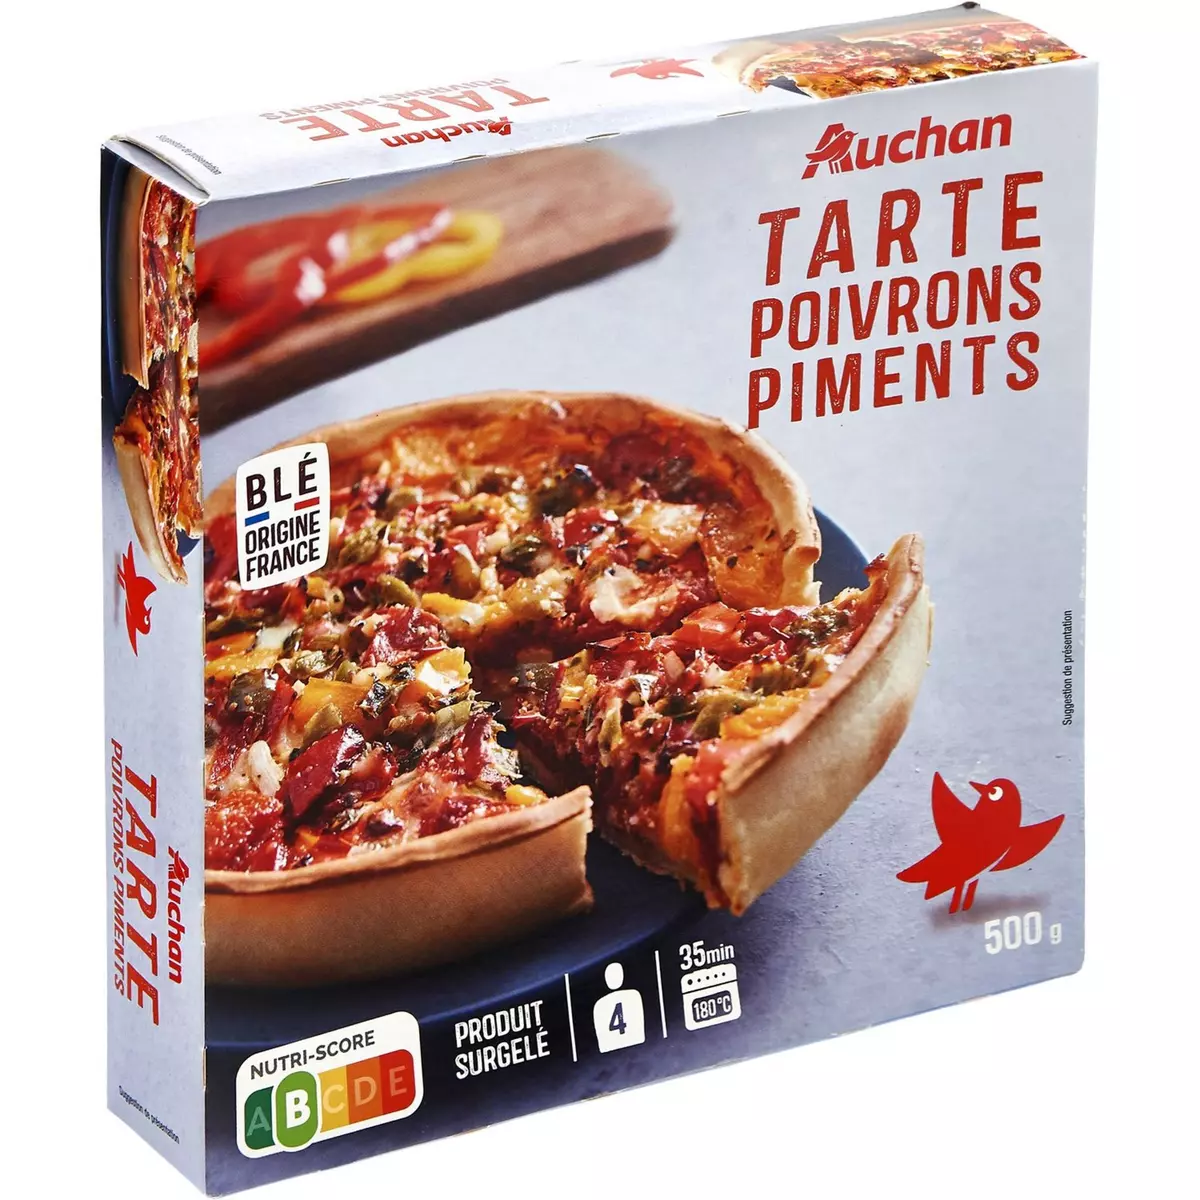 AUCHAN Tarte poivrons et piments 500g